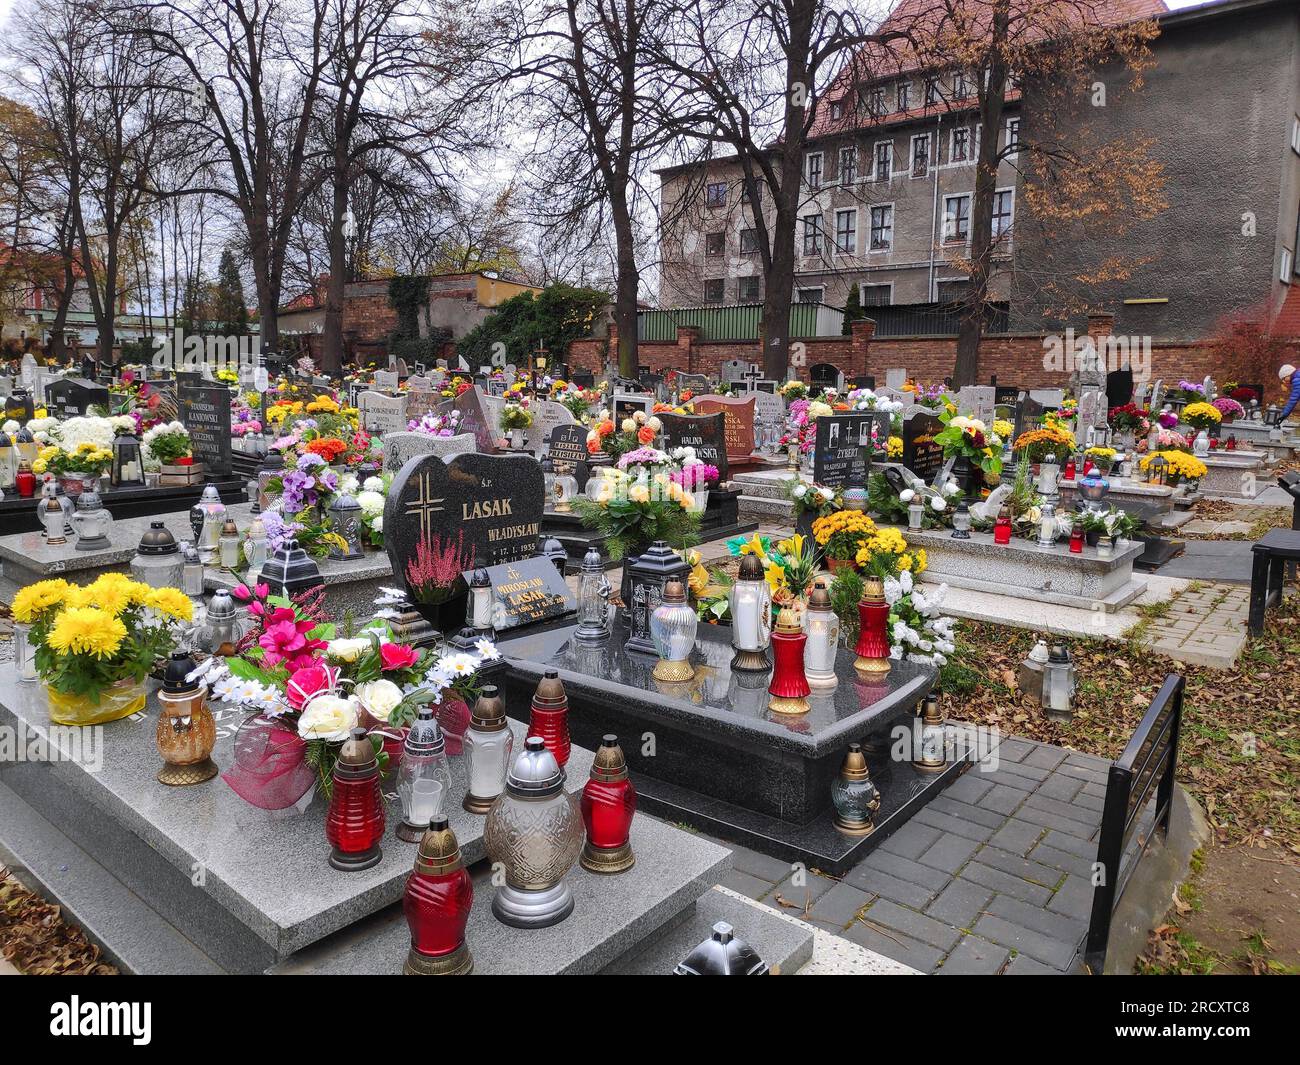 BYTOM, POLEN - 7. NOVEMBER 2021: Kerzen auf den Gräbern auf einem Friedhof in der Woche nach dem Allerheiligen-Tag (Wszystkich Swietych) in Polen. Stockfoto